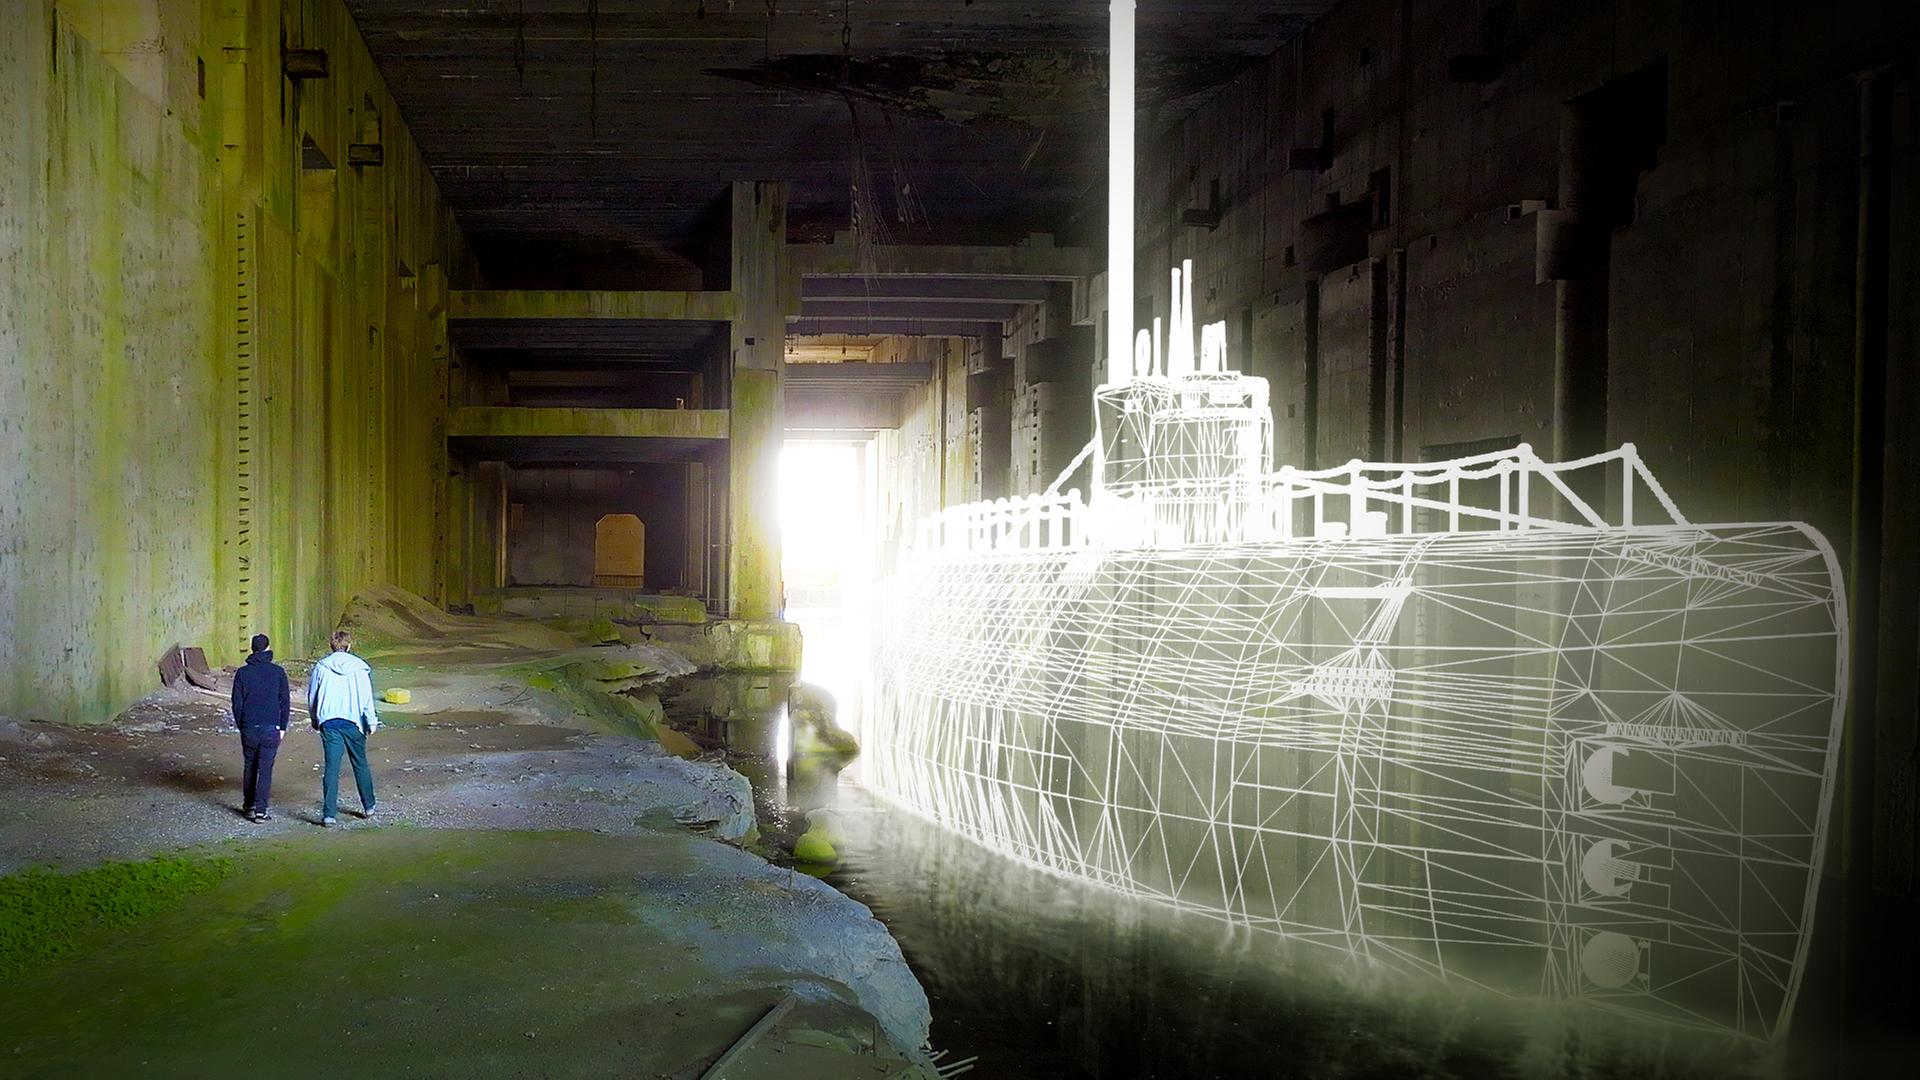 Die Historiker Dr. Marcus Meyer und David Torgovnikov gehen im Bunkerinneren an einem Tauchbecken entlang. Eine Grafik zeigt ein U-Boot im Wasser des Tauchbeckens. Im Hintergrund befindet sich ein Tor in der Wand, durch das Tageslicht eindringt.